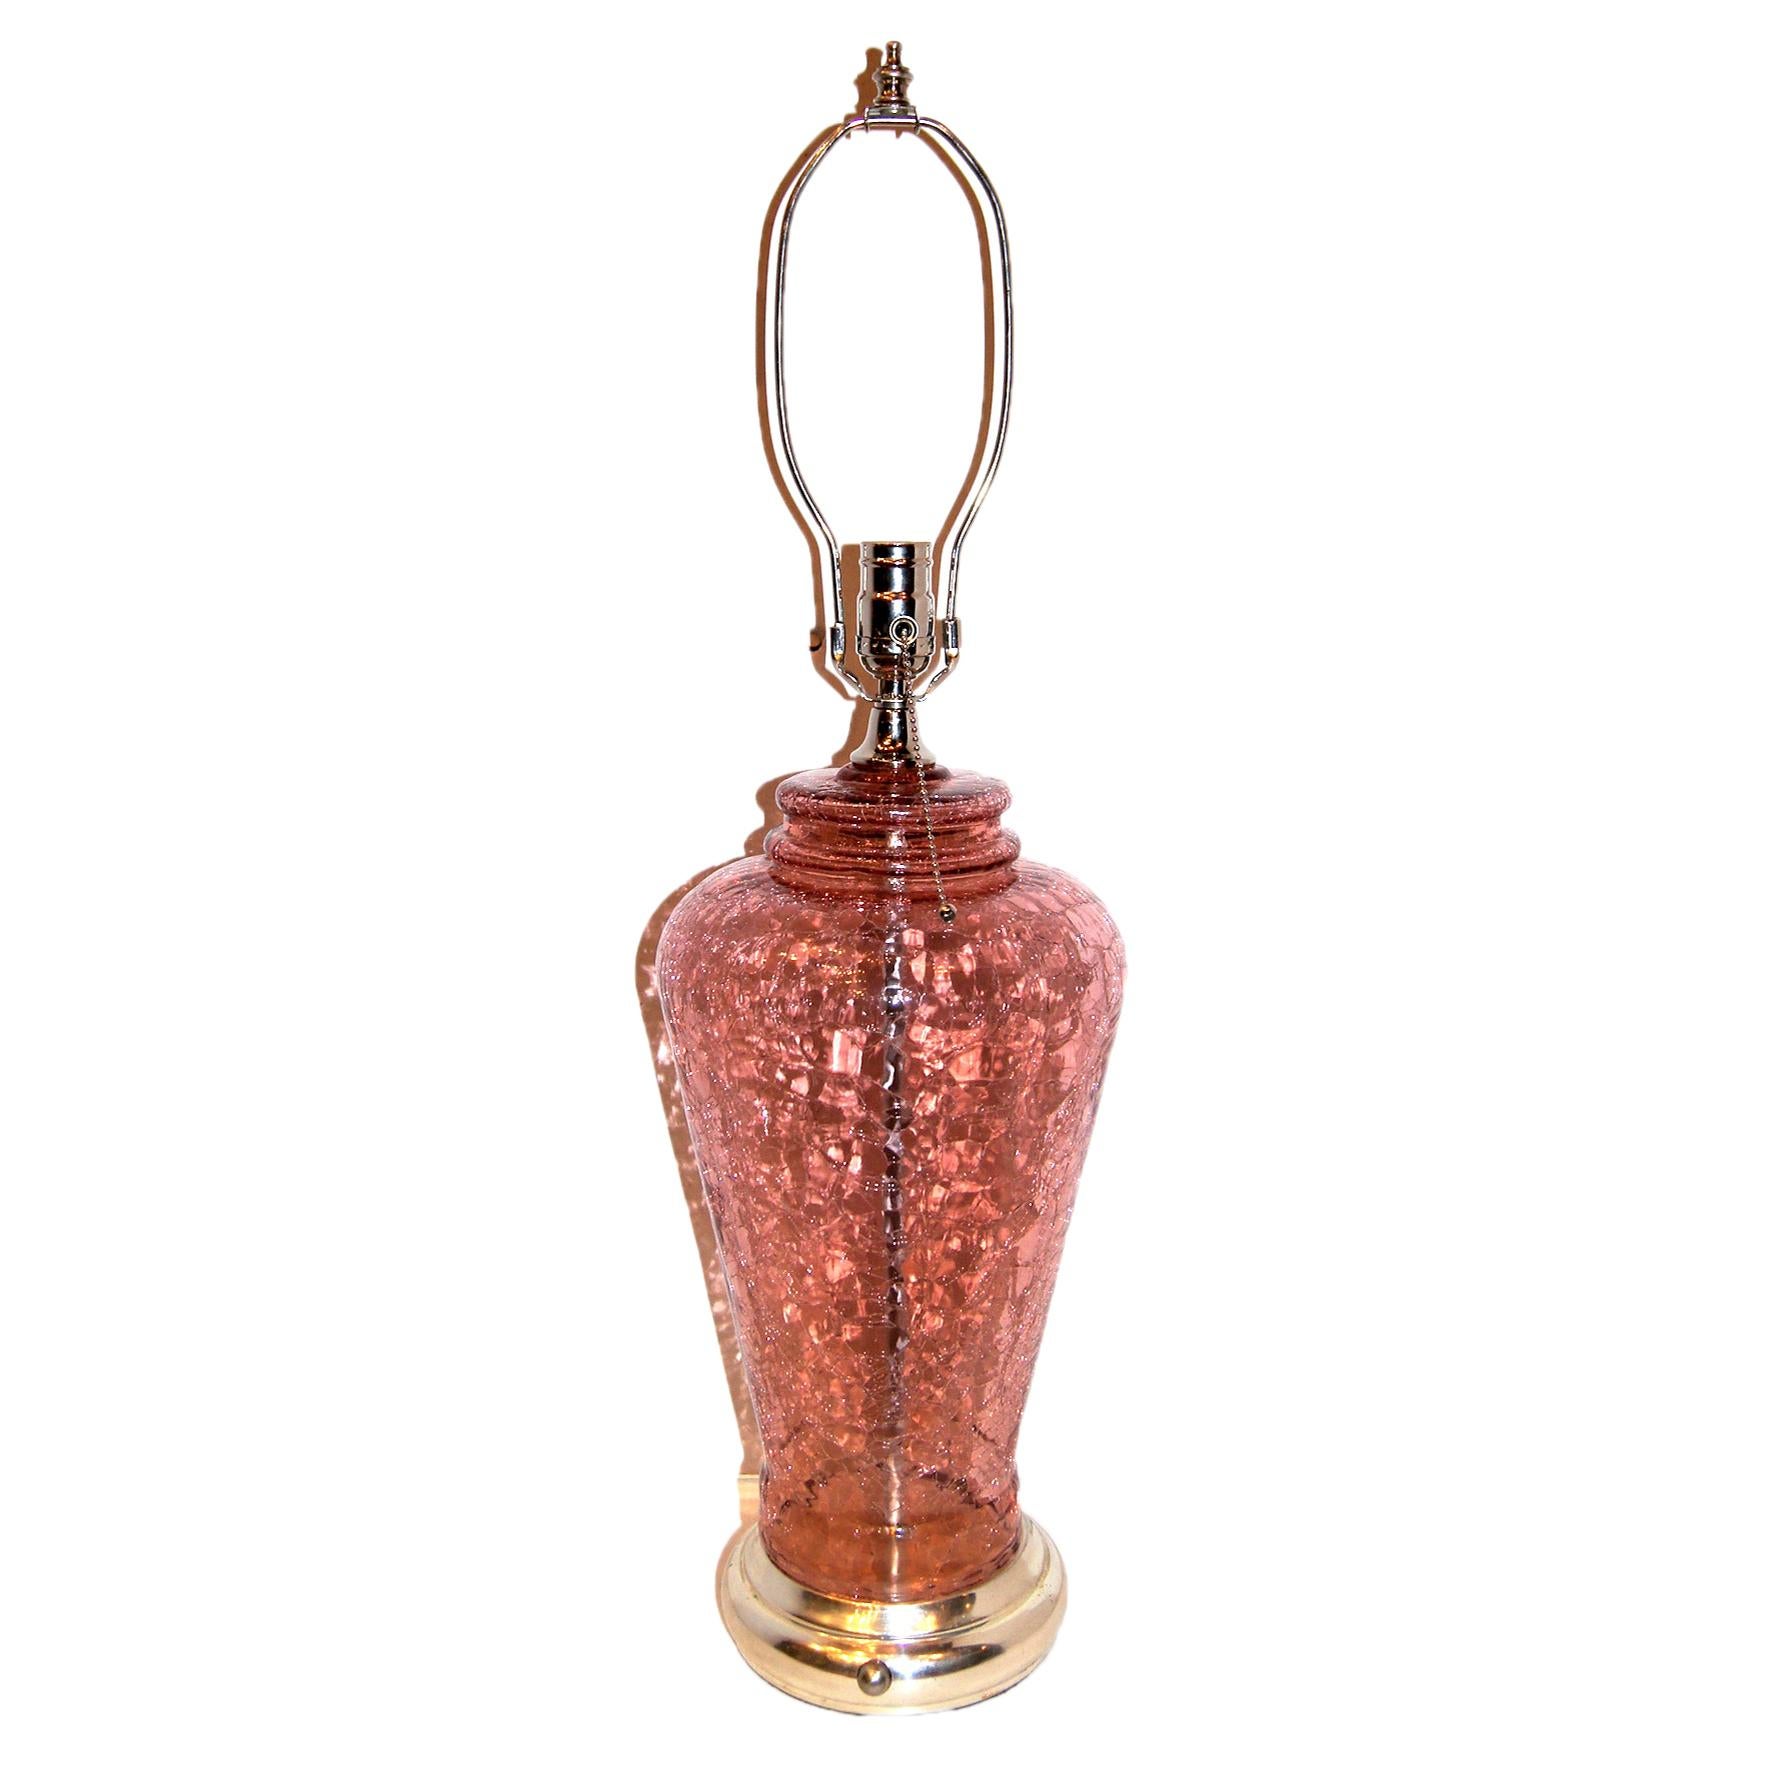 Lampe de table française des années 1940 en verre craquelé rose pâle avec base et ferrures de couleur argentée.

Mesures :
Hauteur du corps : 17,5